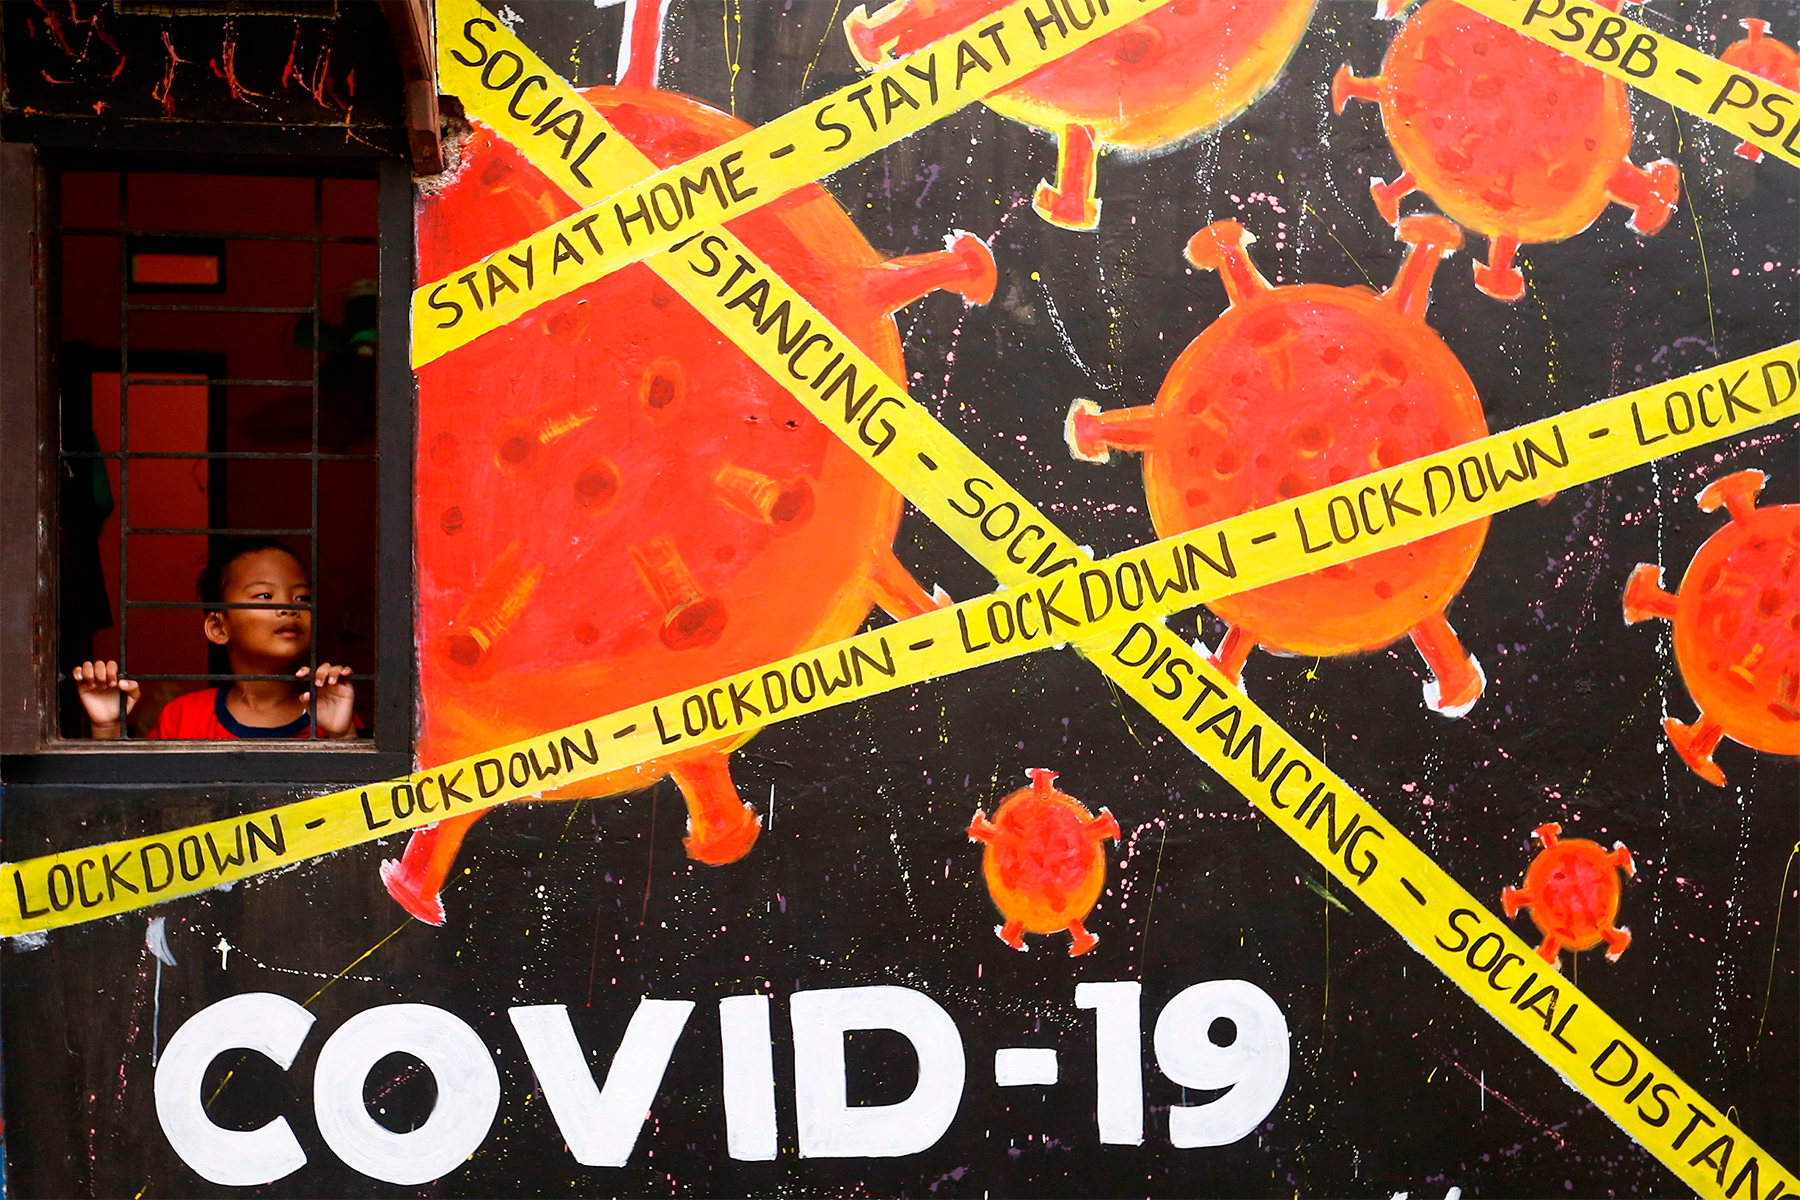 पिछले 24 घंटे में कोविड-19 संक्रमण के 22,431 नए मामले और 318 लोगों ने जान गंवाई